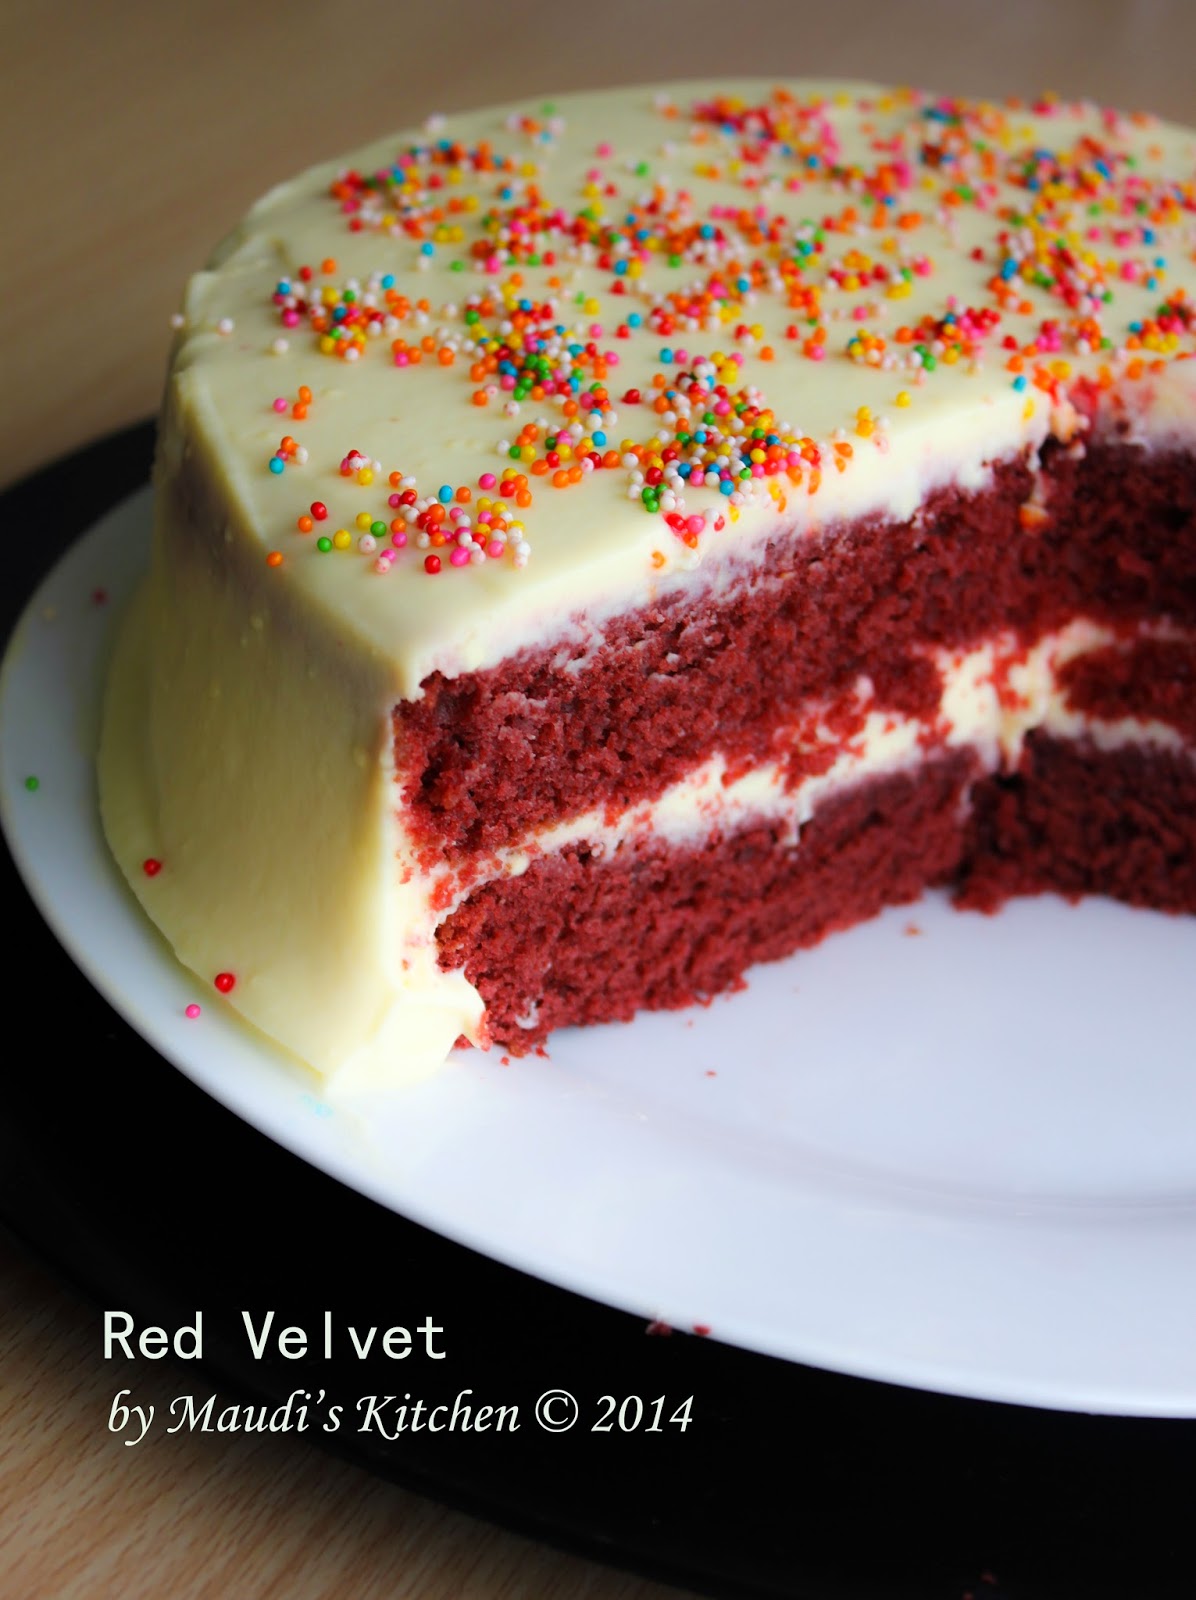 Maudi s kitchen Red Velvet Cake